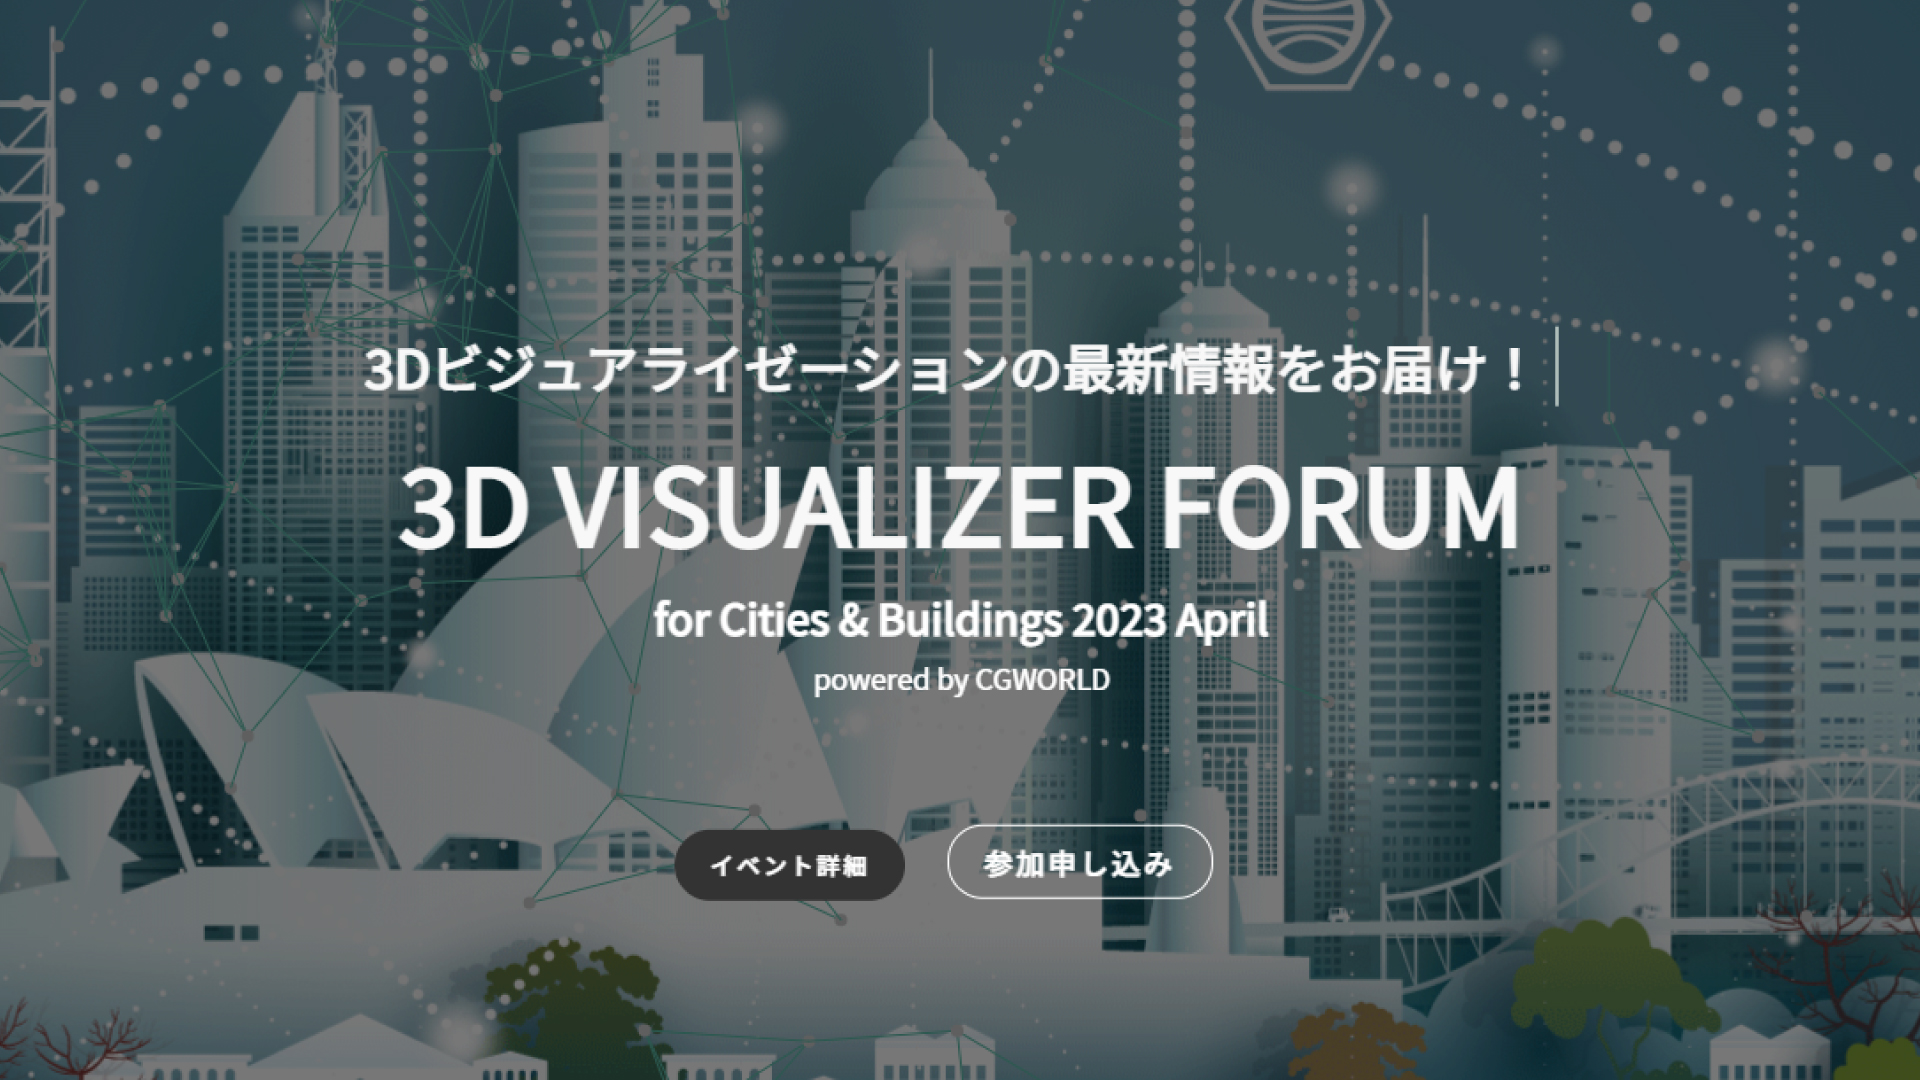 3D Visualizer Forum for Cities & Buildings 2023 April